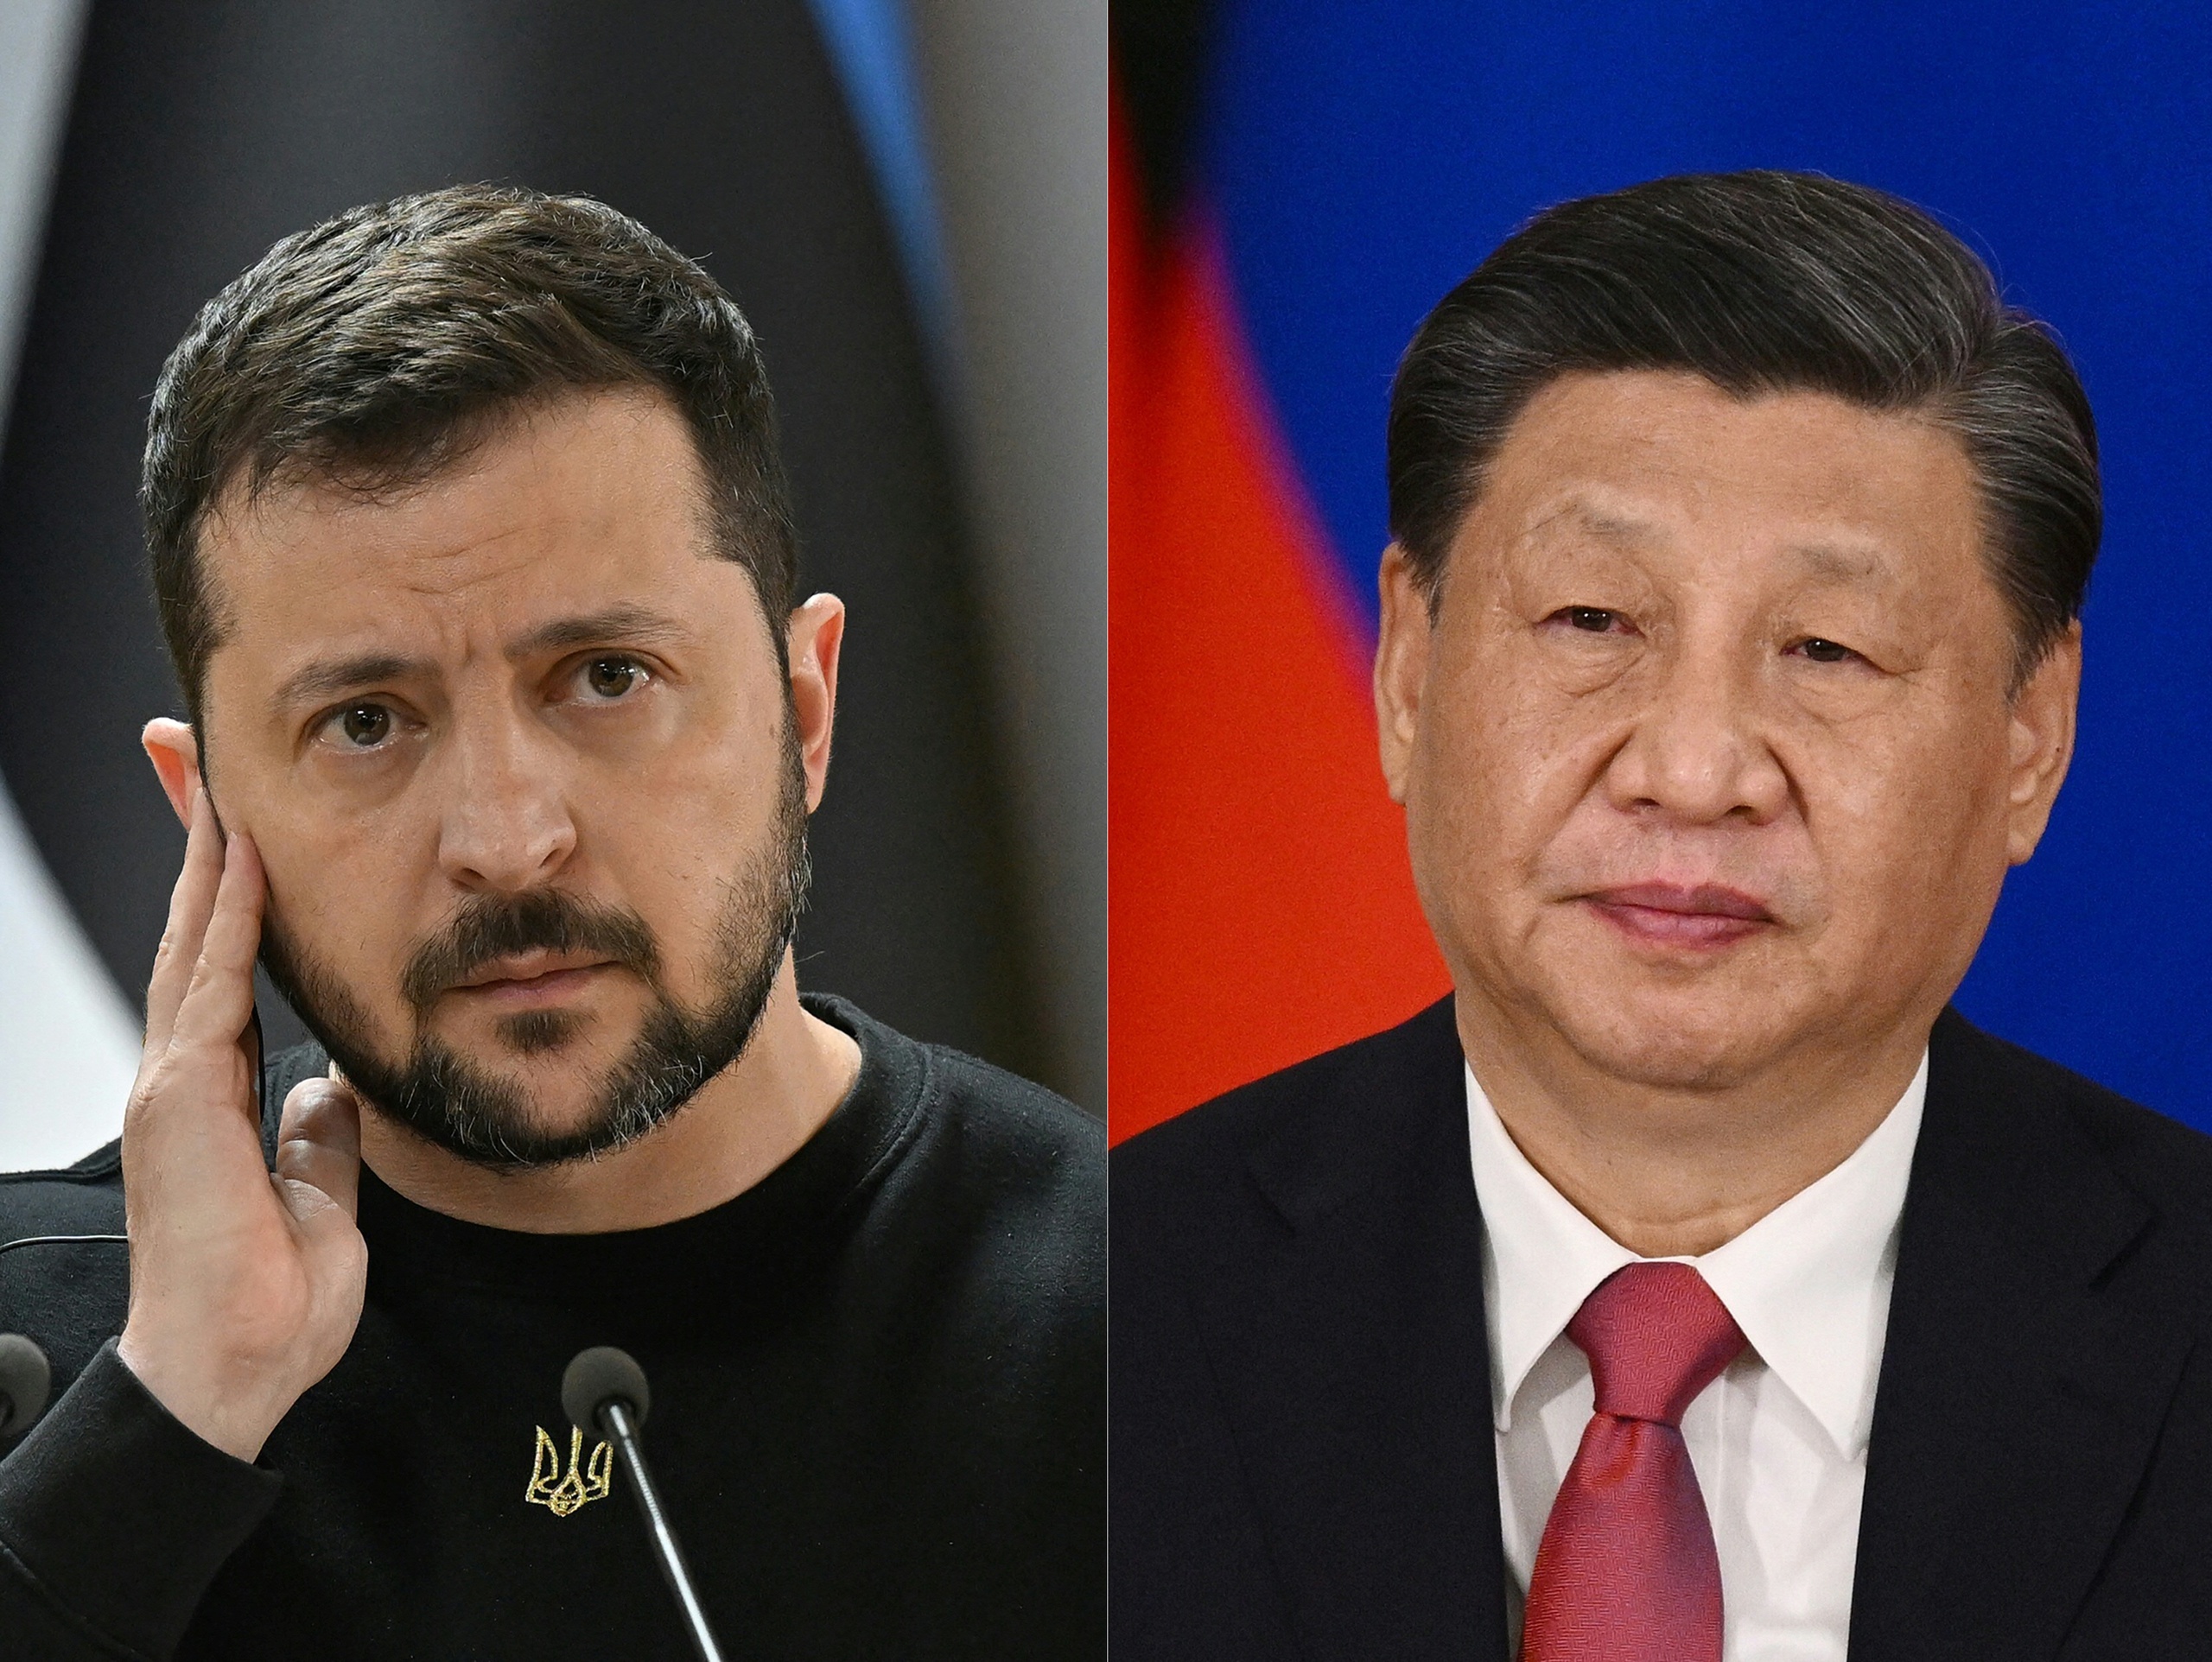 Het gesprek tussen de Oekraïense president Zelenski en de Chinese leider Xi Jinping is een nederlaag voor het Westen. ‘Wij kunnen dit dus kennelijk helemaal niet zelf oplossen. Het gebeurt in onze achtertuin, maar China moet erbij komen voor een oplossing.’ 